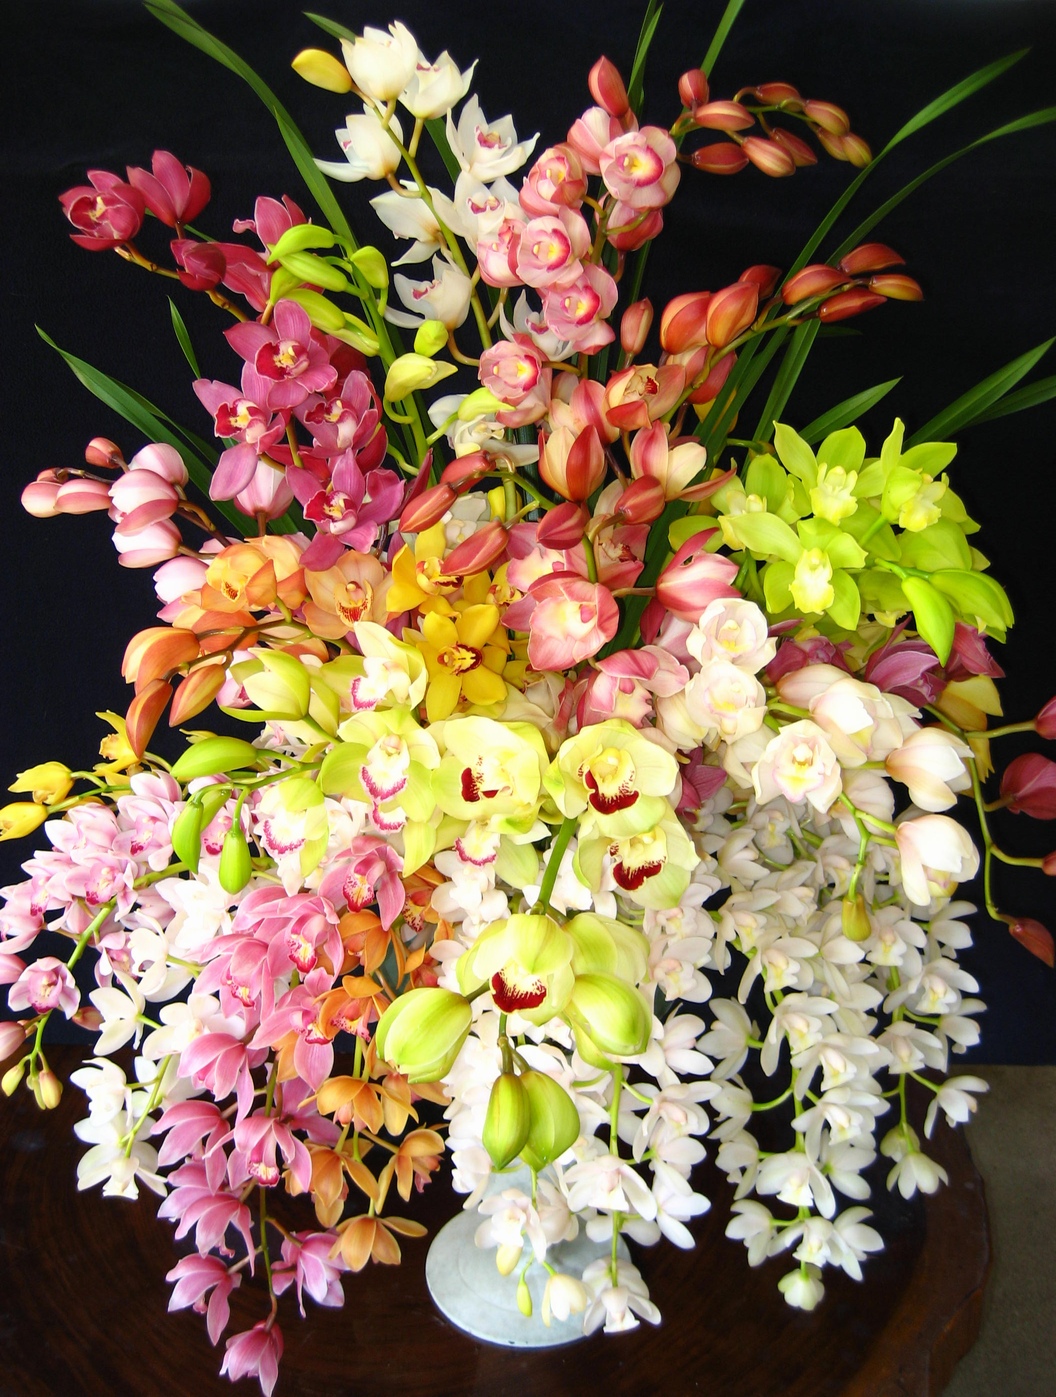 もっと長持ち シンビジュームの花を楽しむ方法をご紹介 Hanazukin 花ずきん 農家直送の花苗 シンビジュームの花束